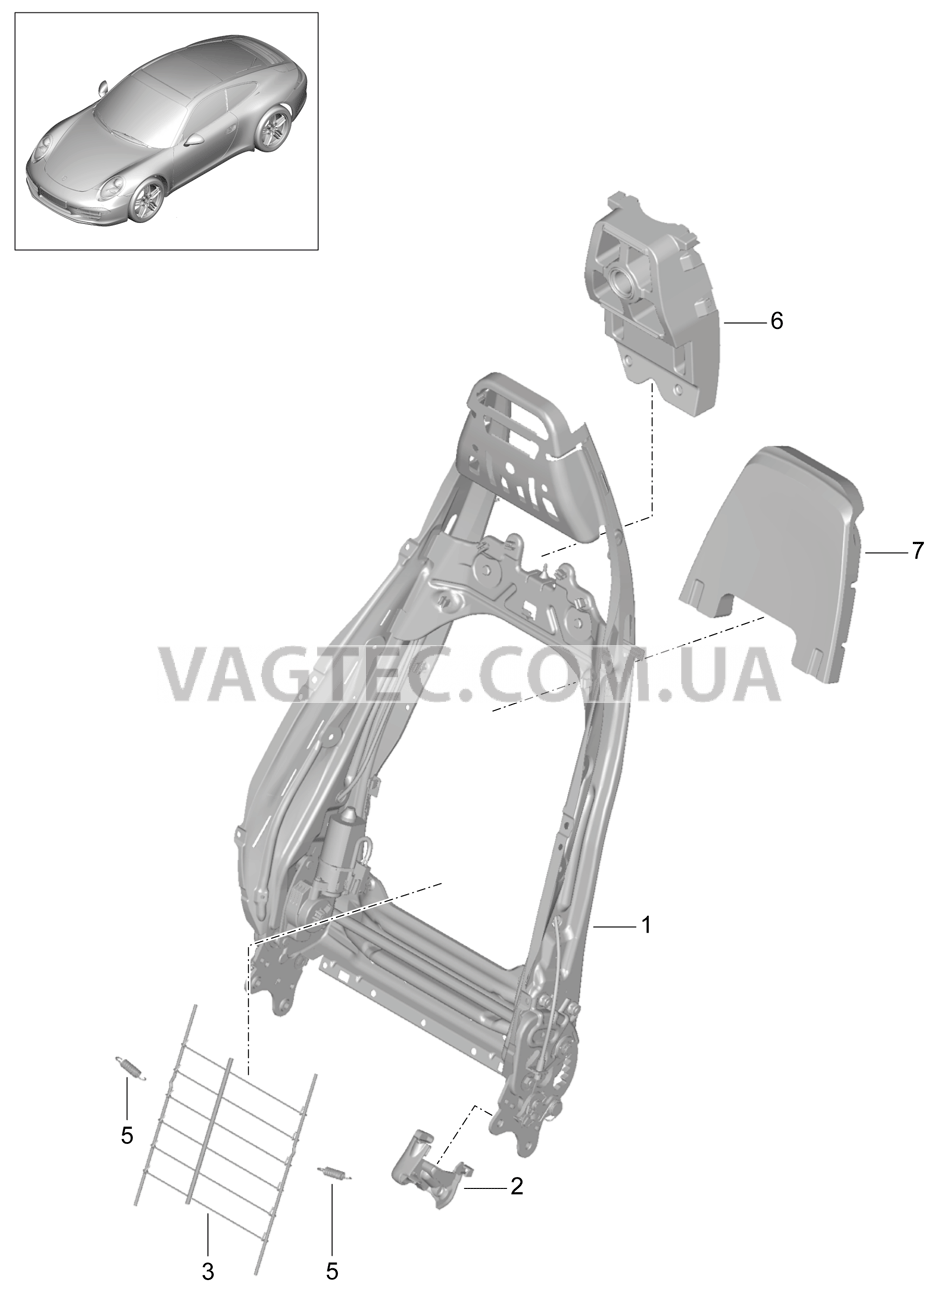 817-021 Каркас спинки, Спортивное сиденье PLUS, Детали для PORSCHE 911.Carrera 2012-2016USA